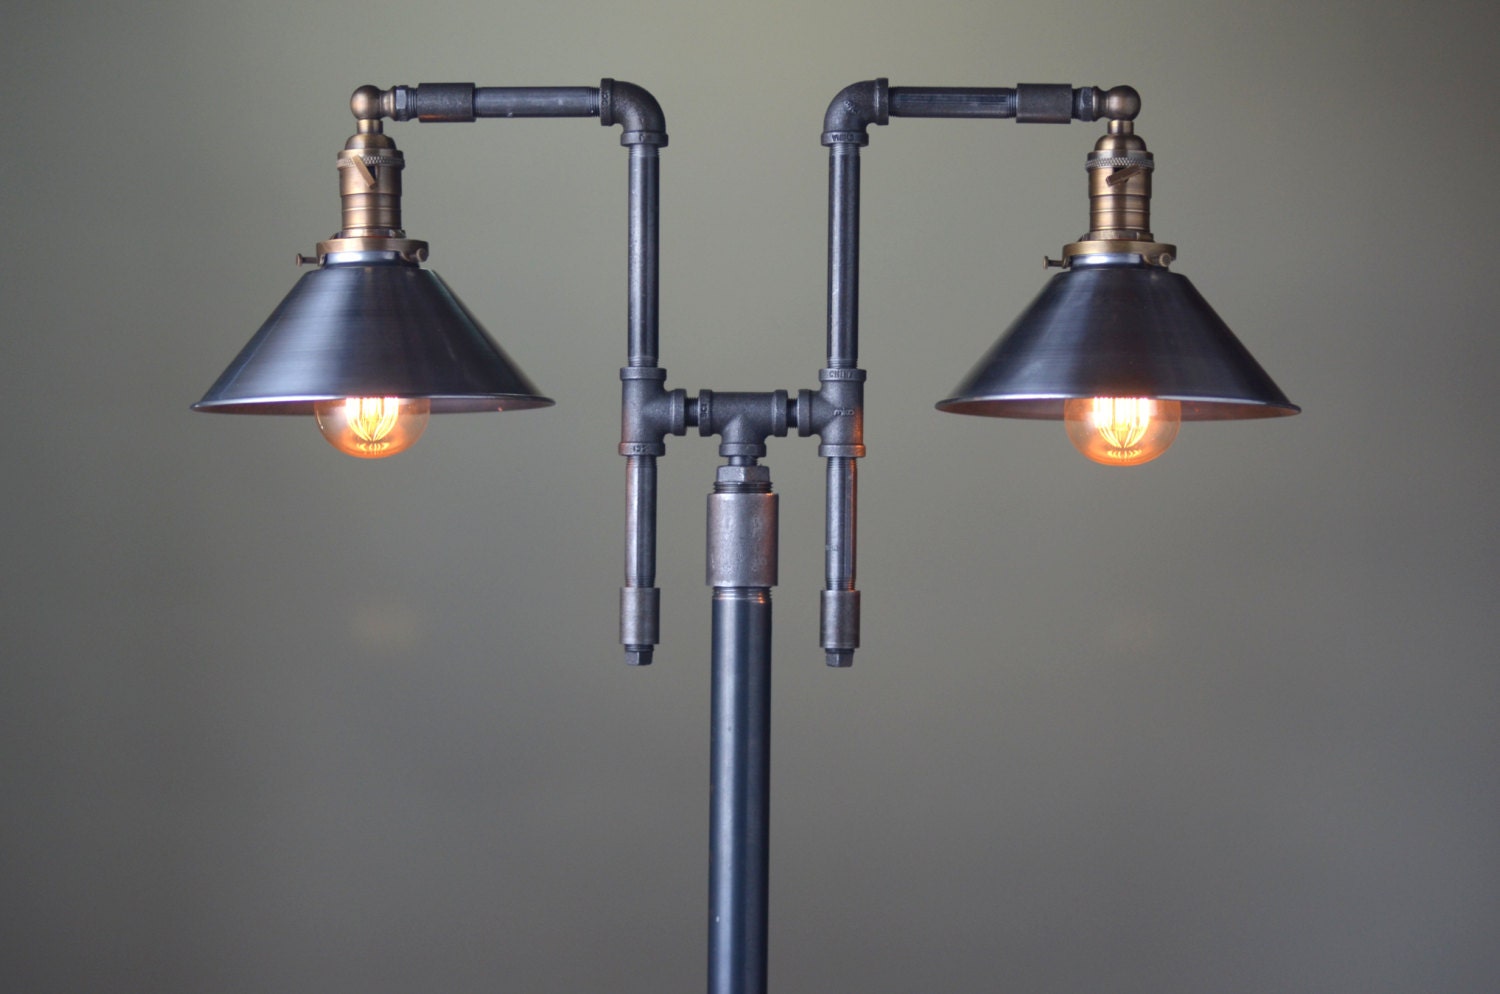 Vintage Floor Lamp Industrial Style Lighting Iron Pipe